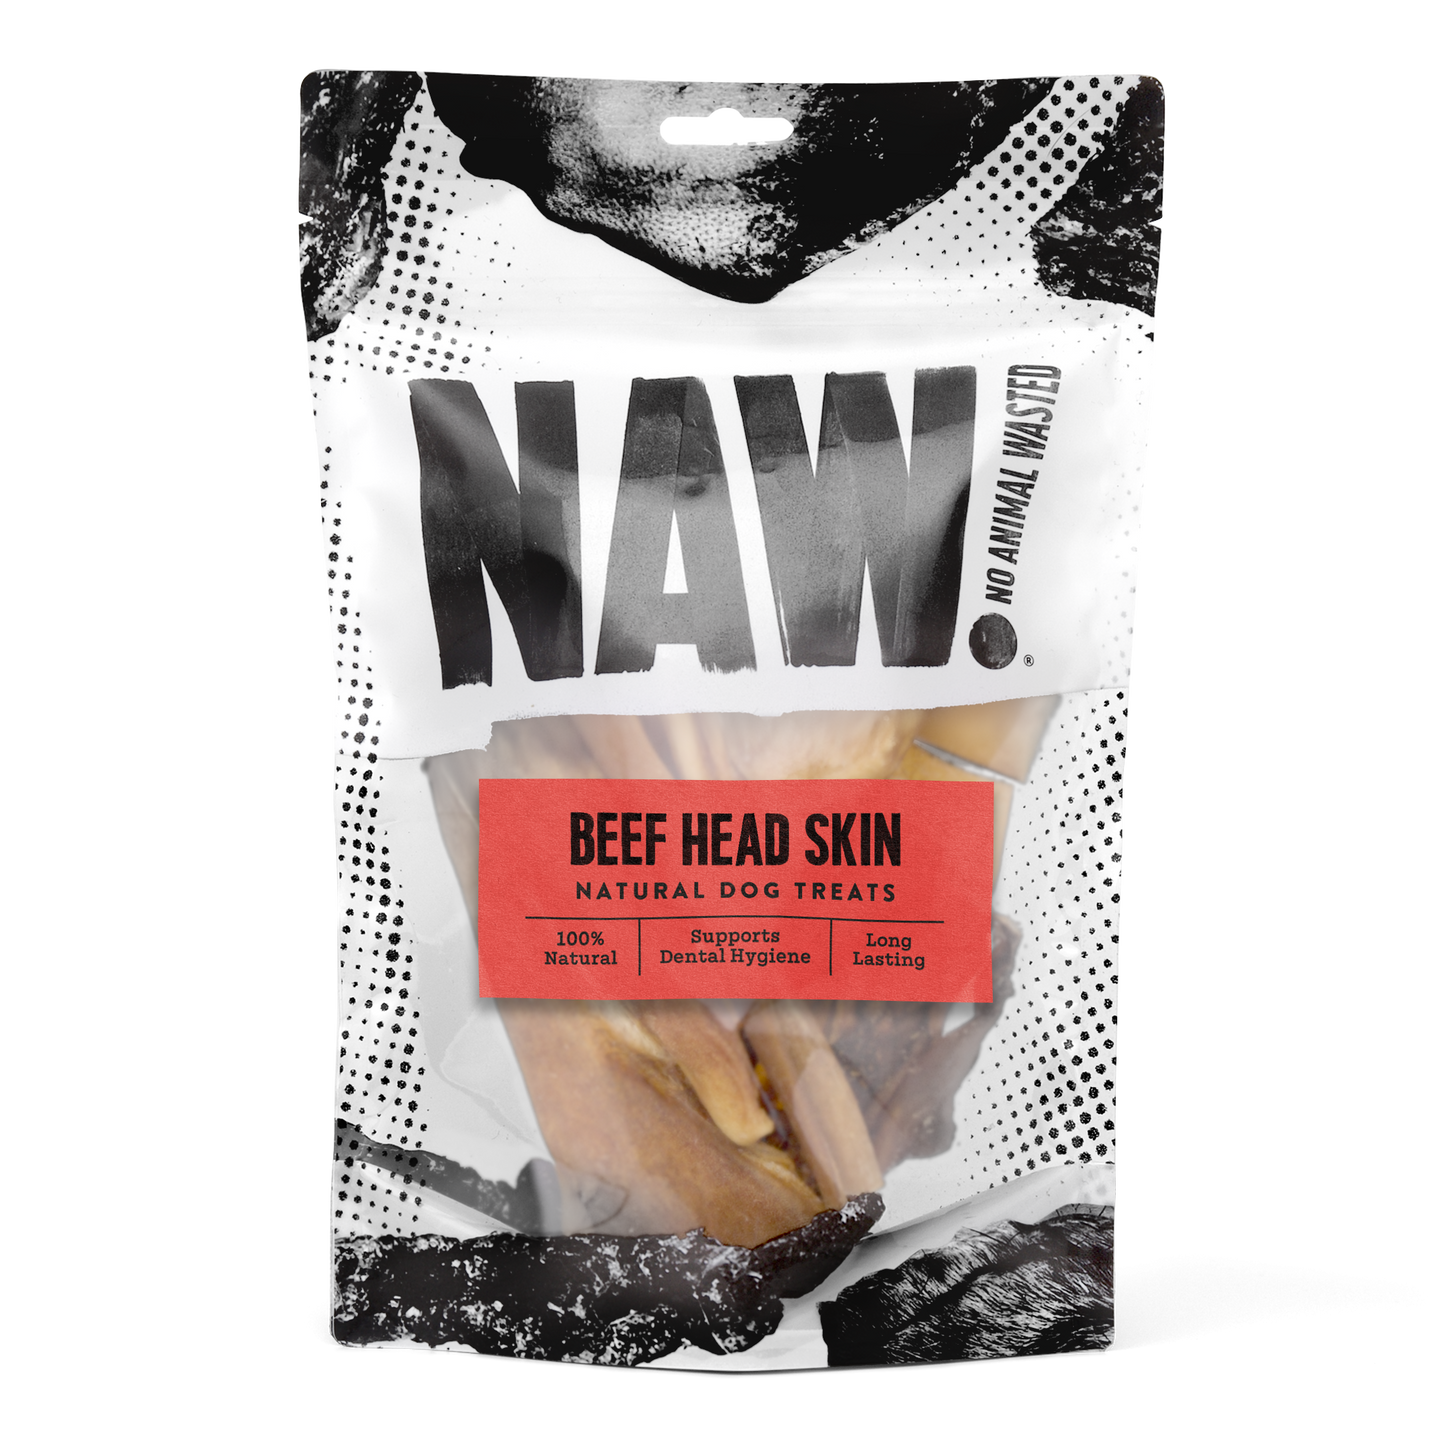 NAW Beef Head Skin Natural 250g